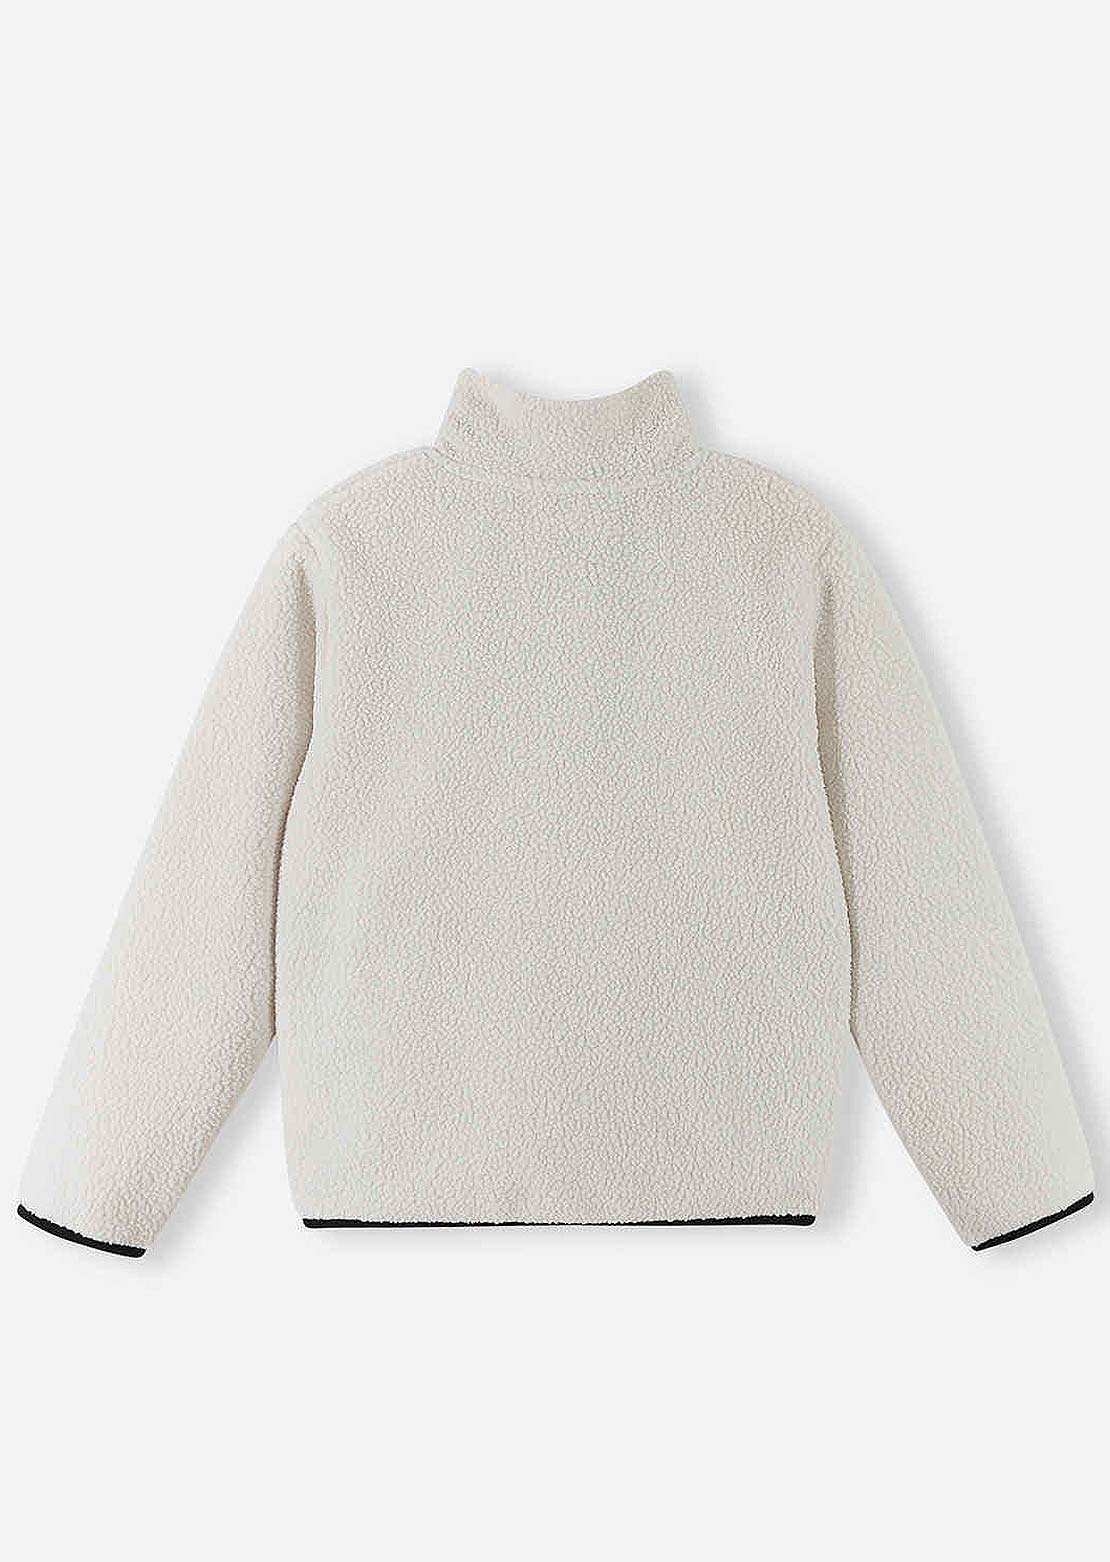 Reima Toddler Turkki Sweater Light Beige